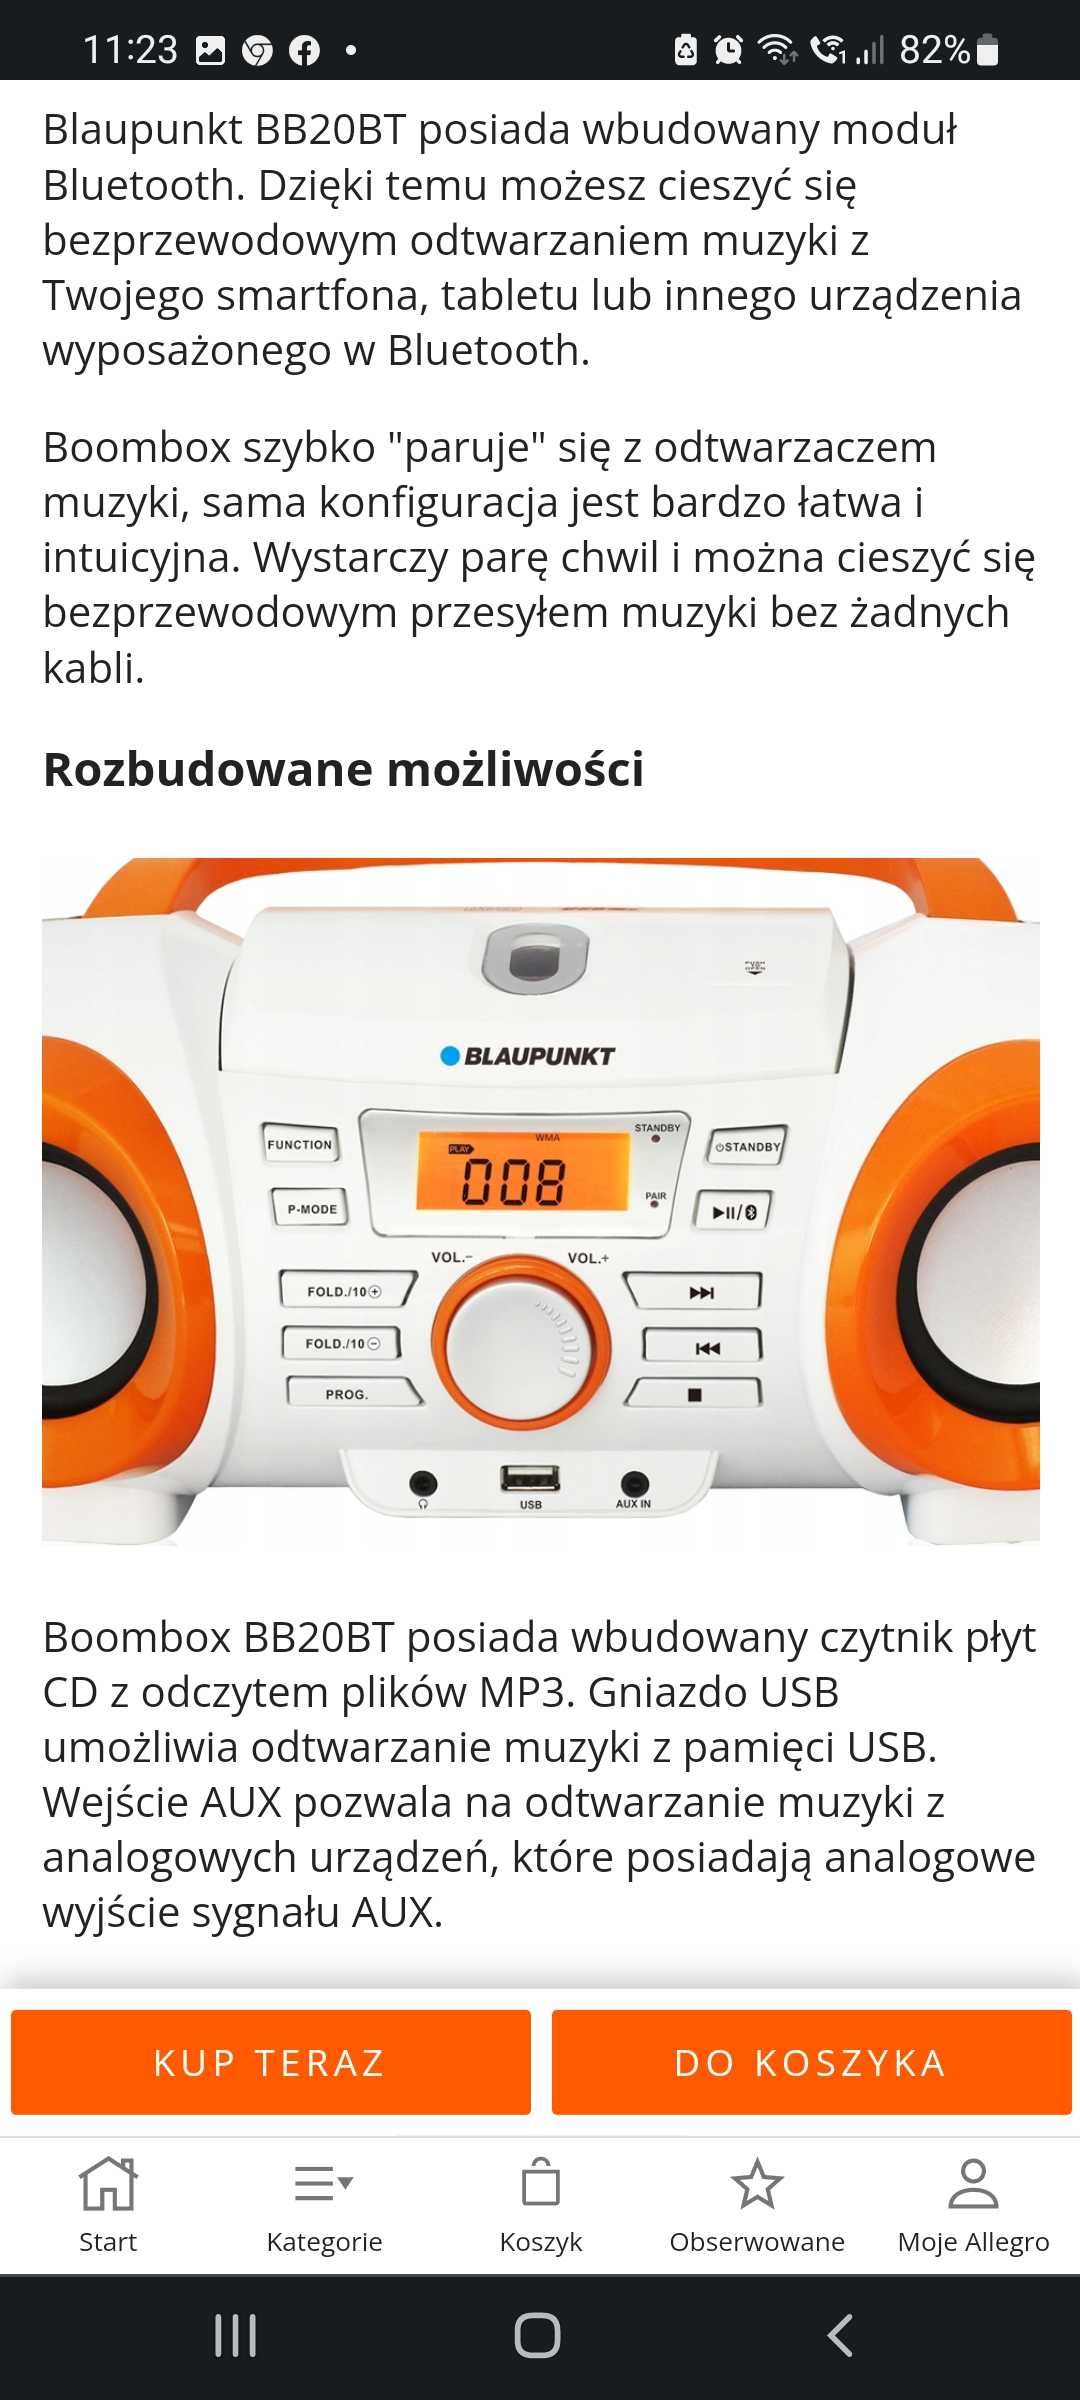 Radio sieciowo bateryjne FM Blaupunkt BB20BT